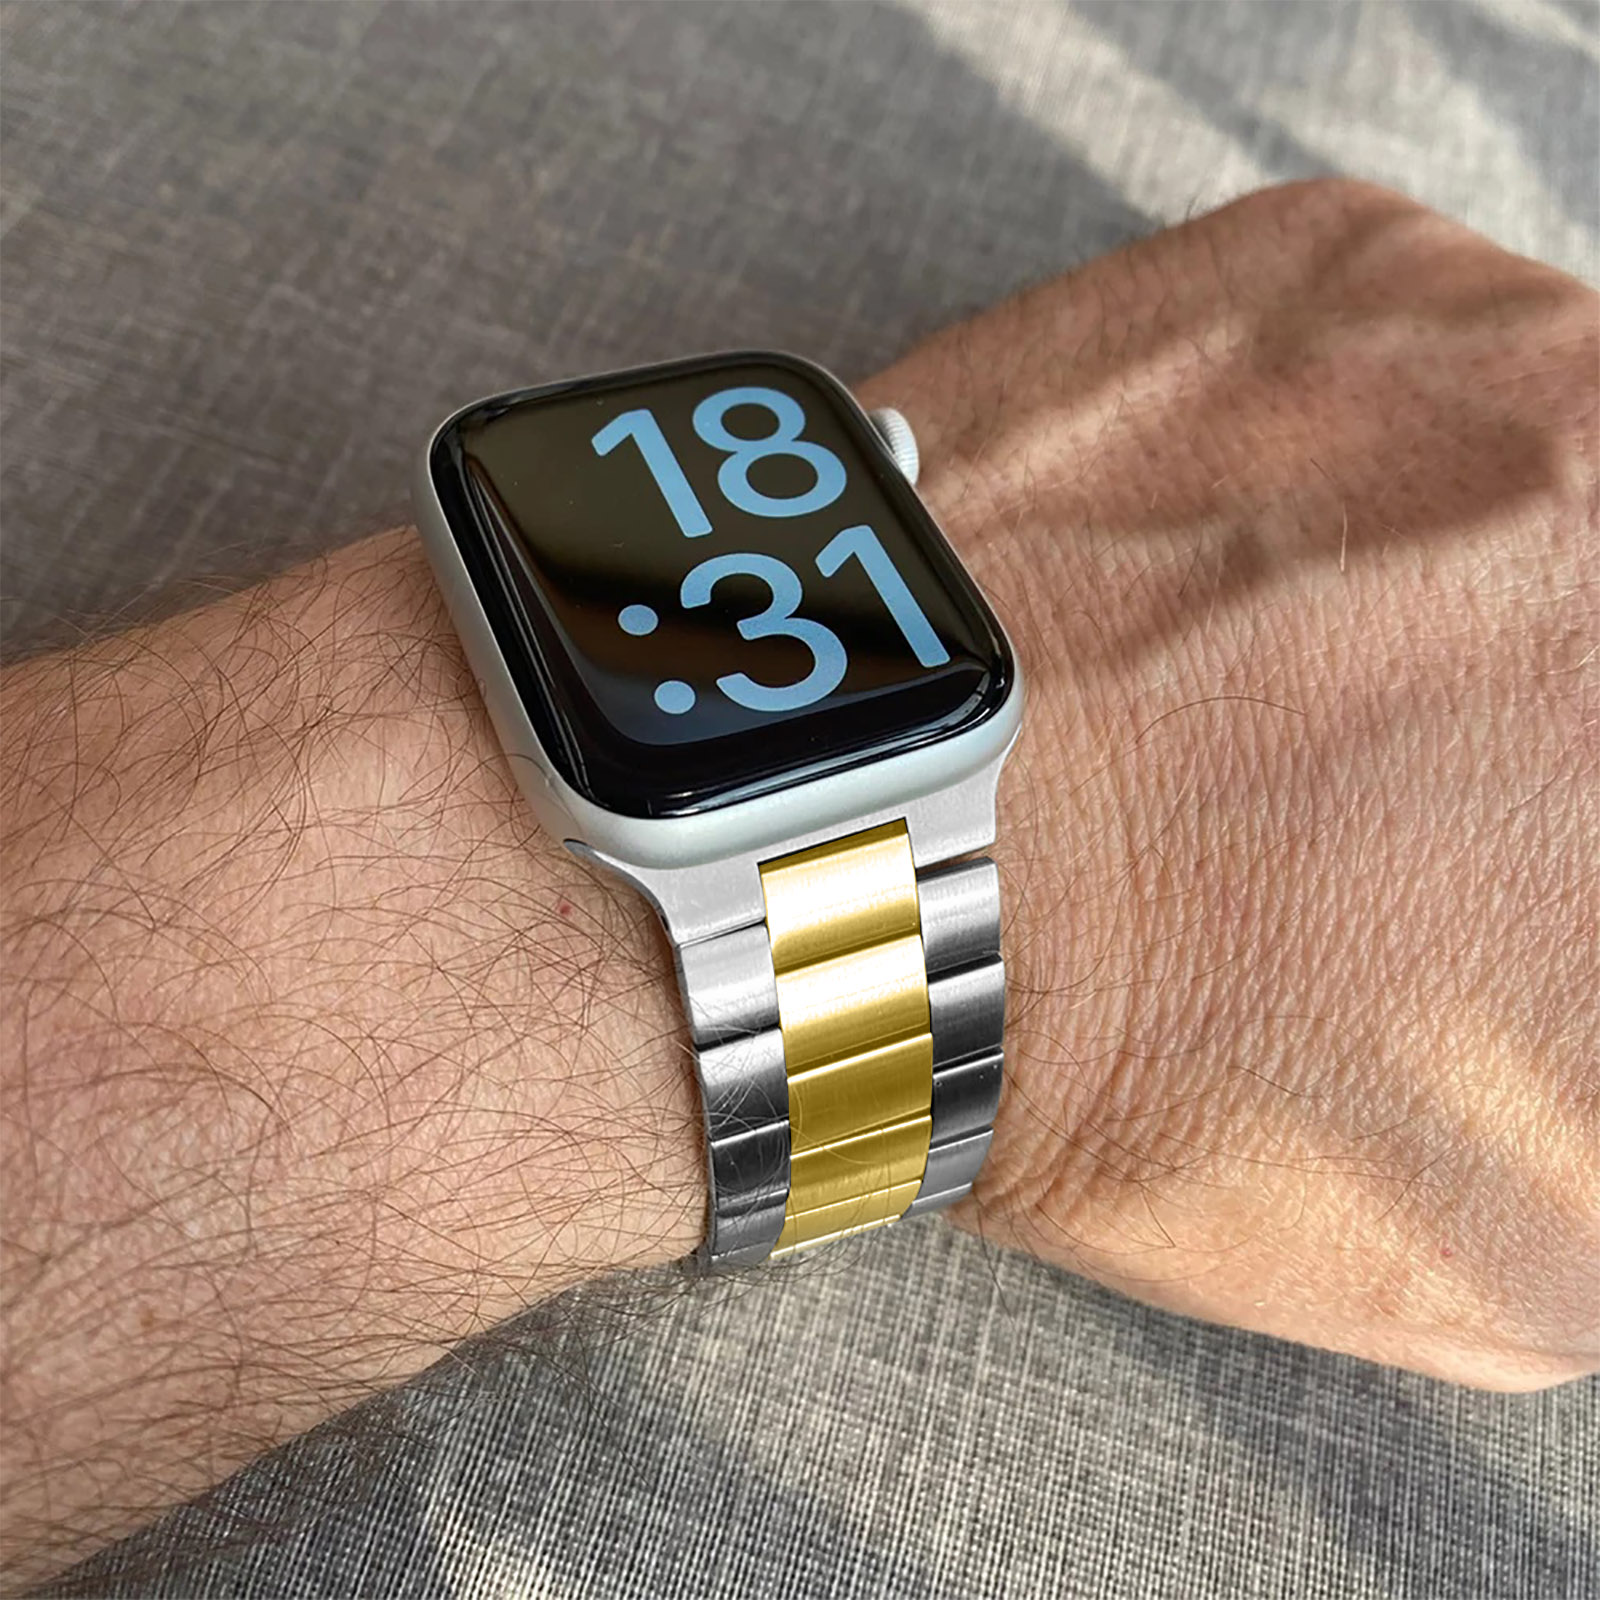 Bracelets Apple Watch - Series 3